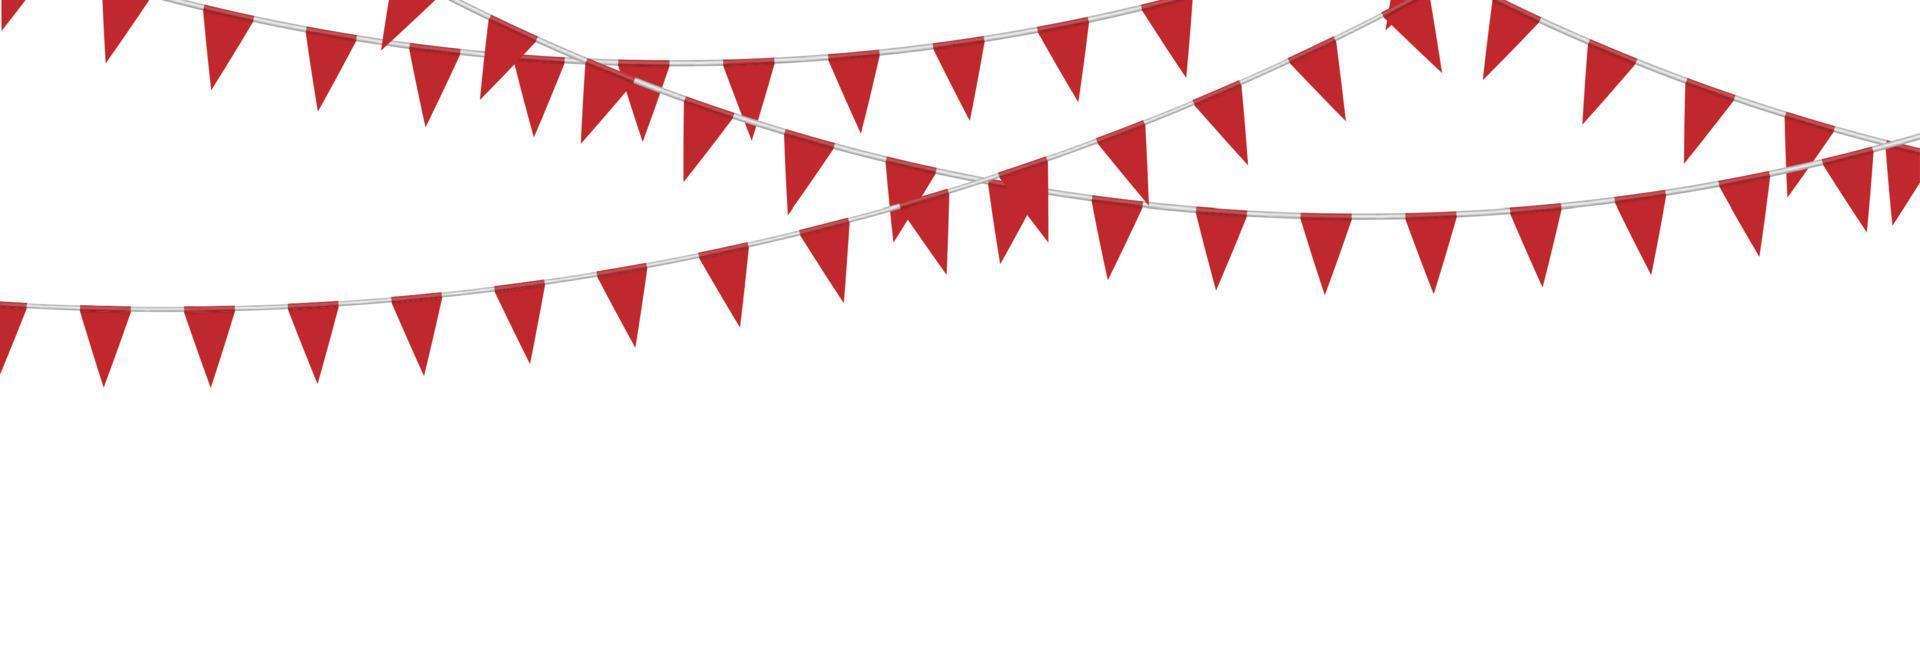 drapeaux de fête banderoles rouges isolés sur fond blanc, illustration vectorielle vecteur